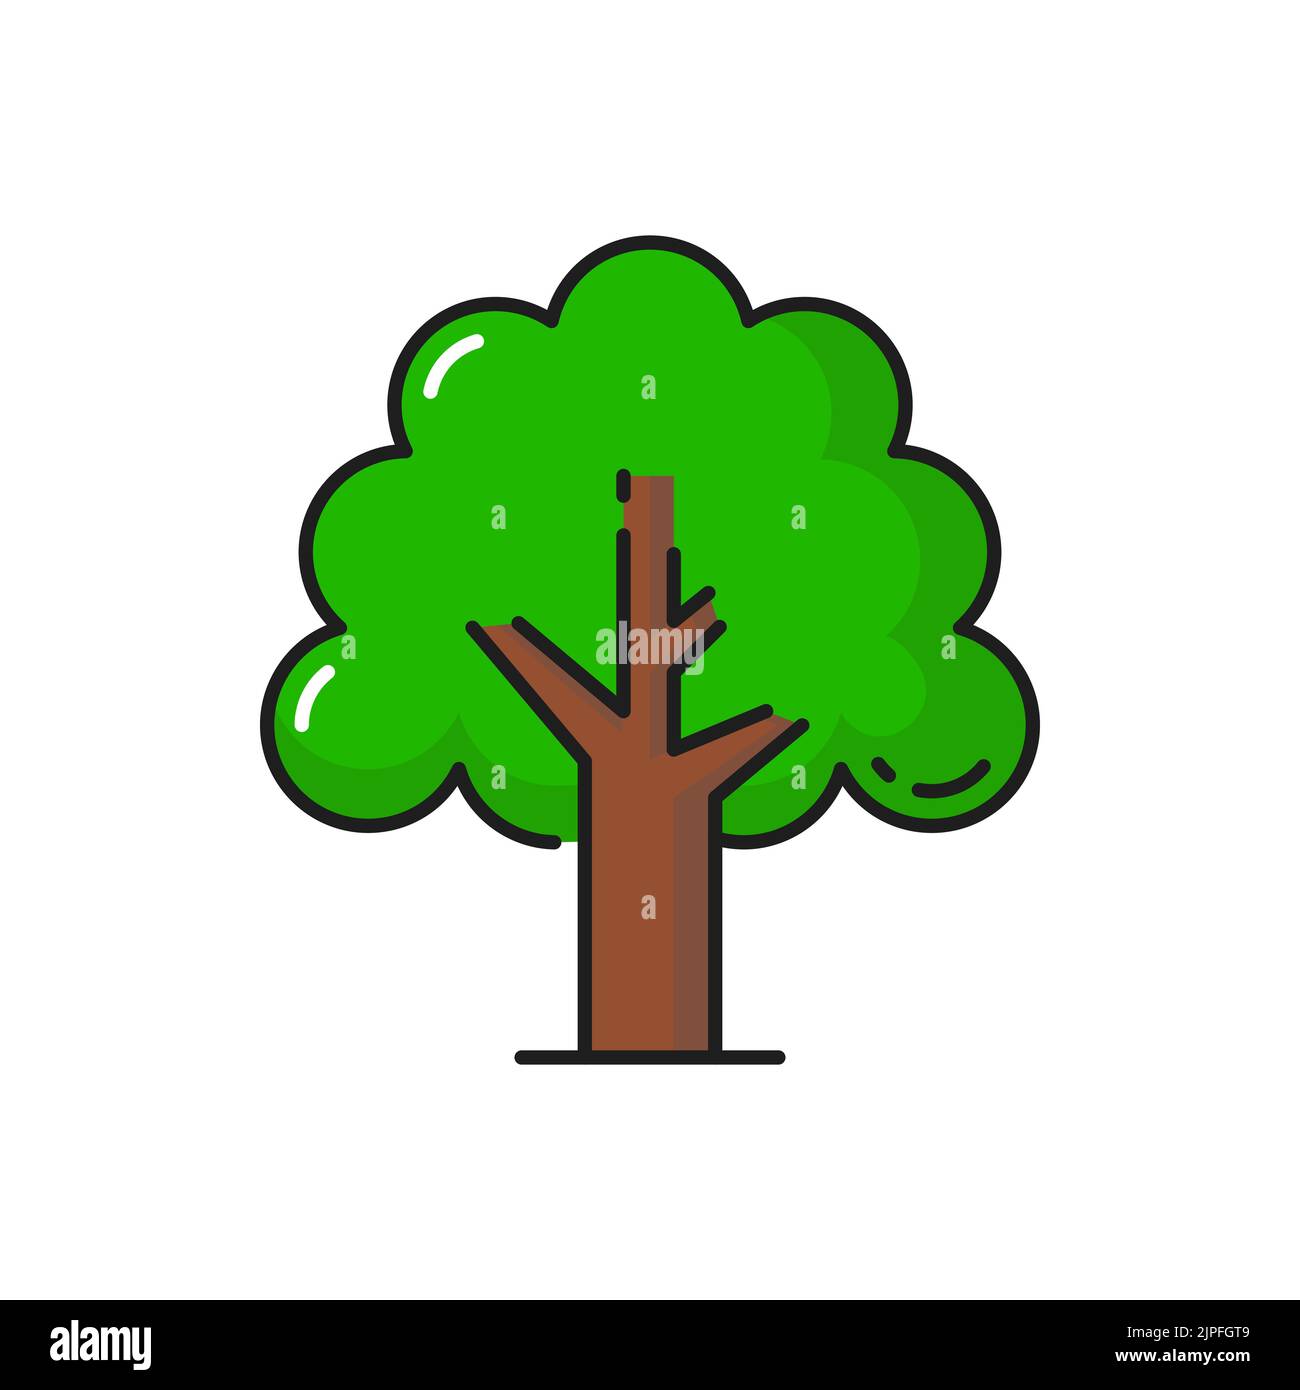 Icône d'arbre vert, plante forestière et naturelle avec branches et feuilles, symbole vectoriel isolé. Chêne de jardin ou buisson dans la silhouette plate icône pour l'environnement écologique, le jardinage et la conception d'aménagement paysager Illustration de Vecteur